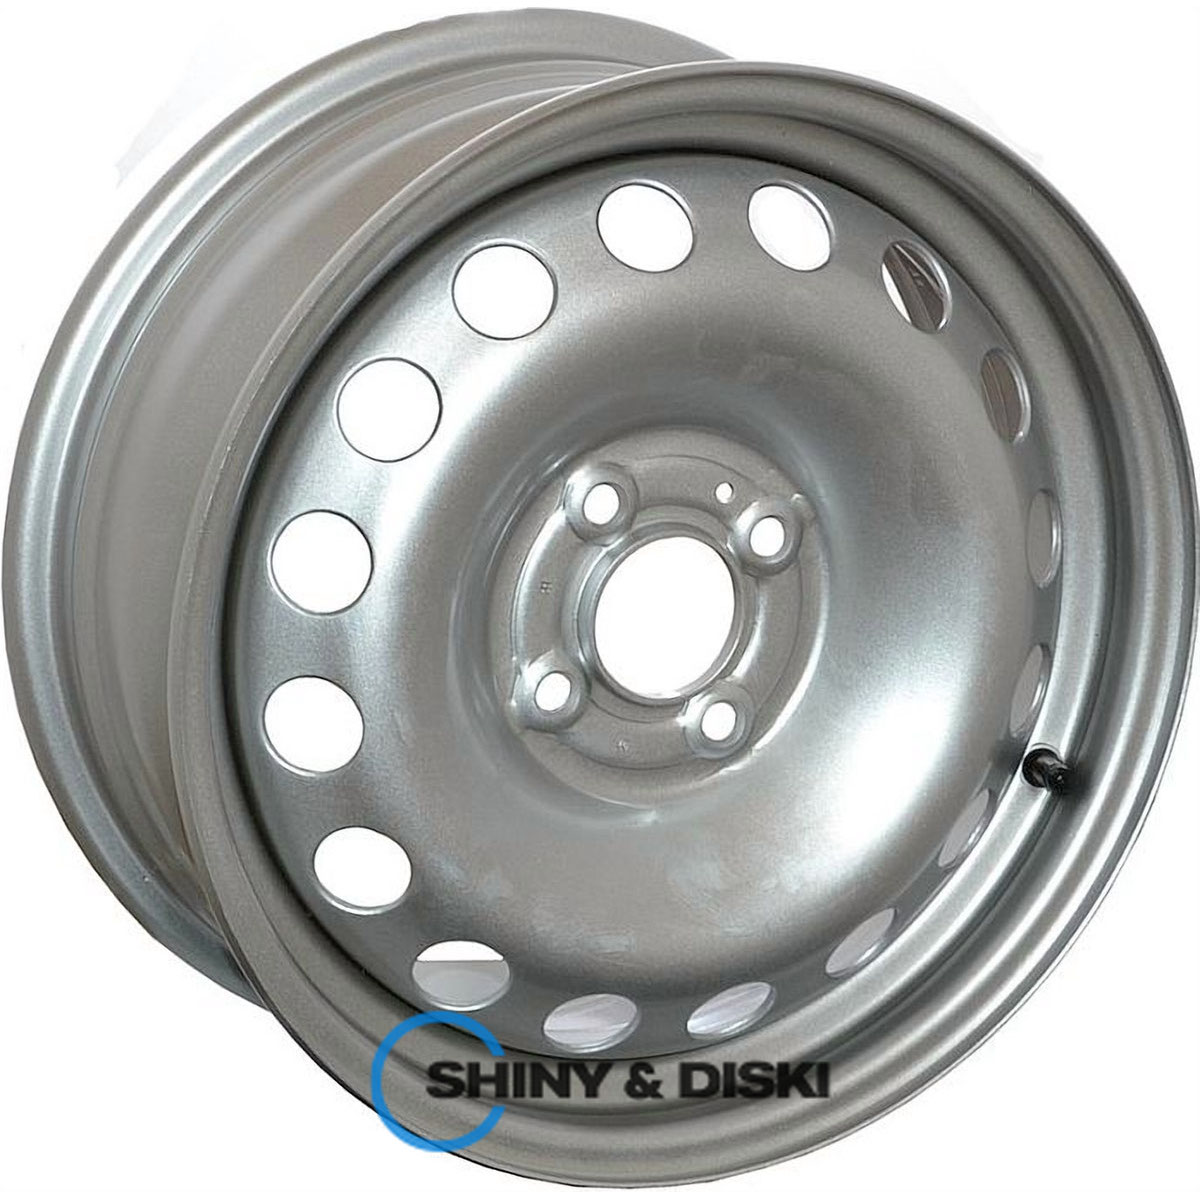 av wheels (silver) renault/nissan oem r16 w6.5 pcd5x114.3 e47 dia66.1